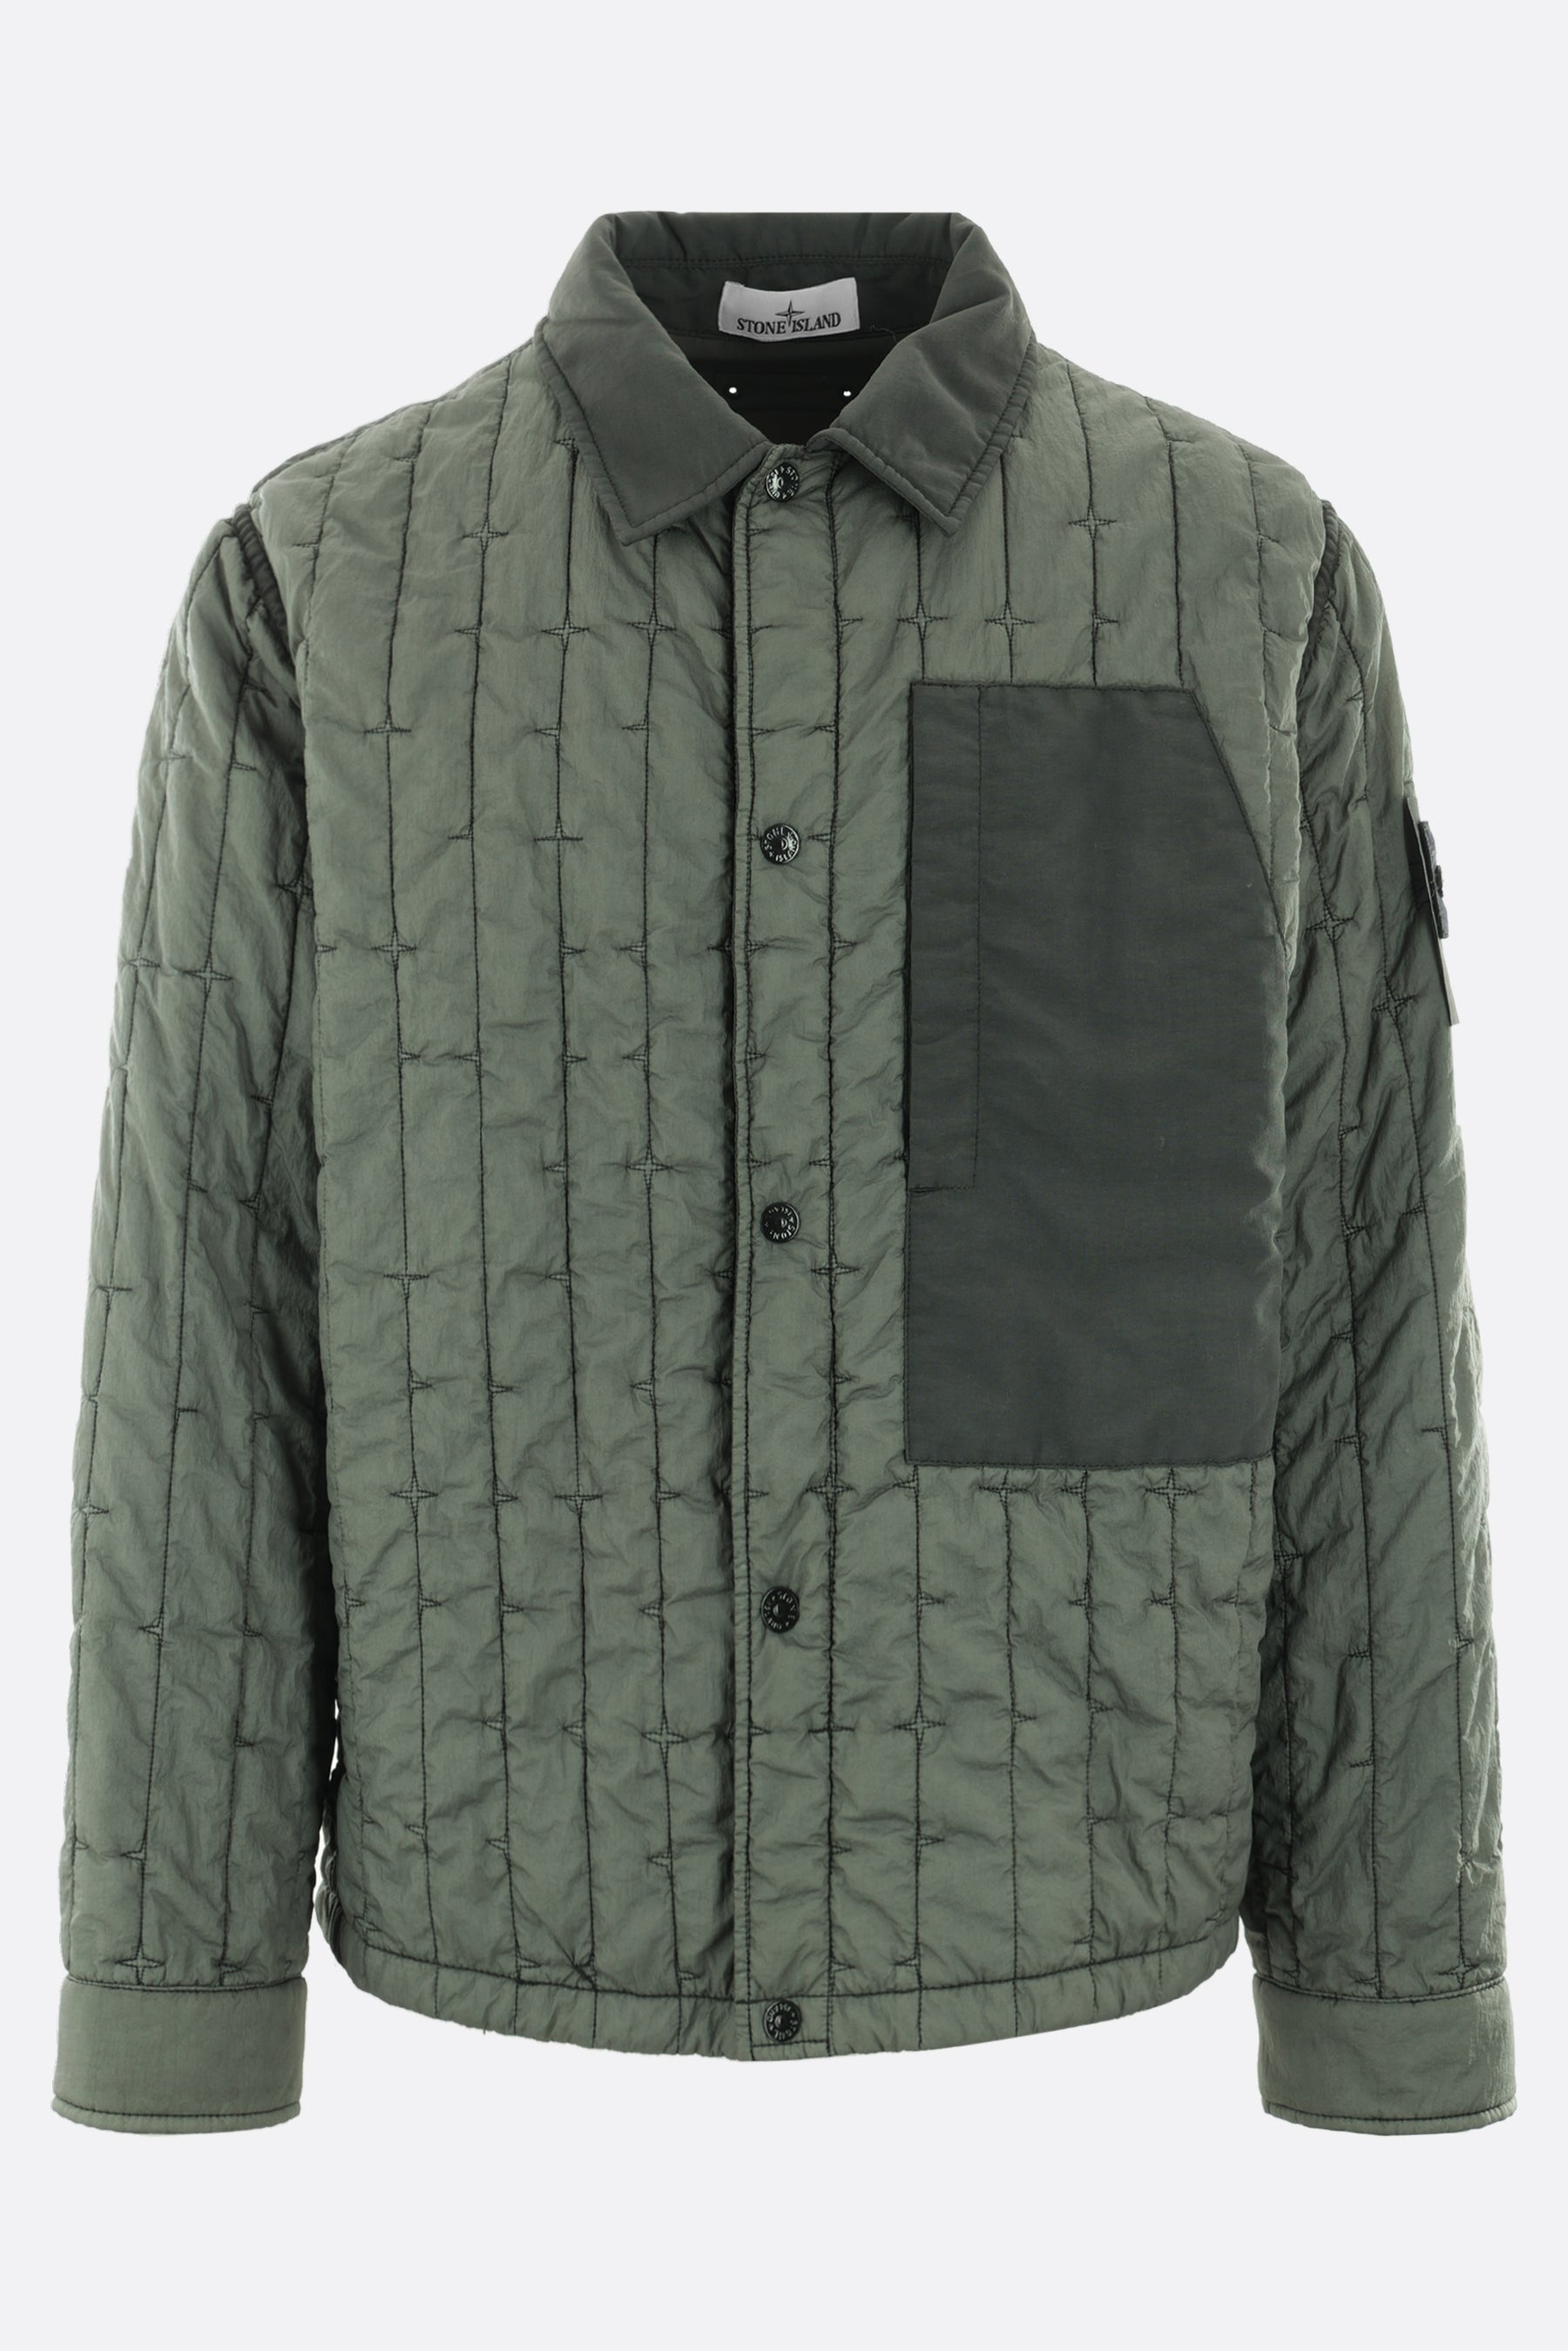 padded jacket in Stella nylon Primaloft-TC